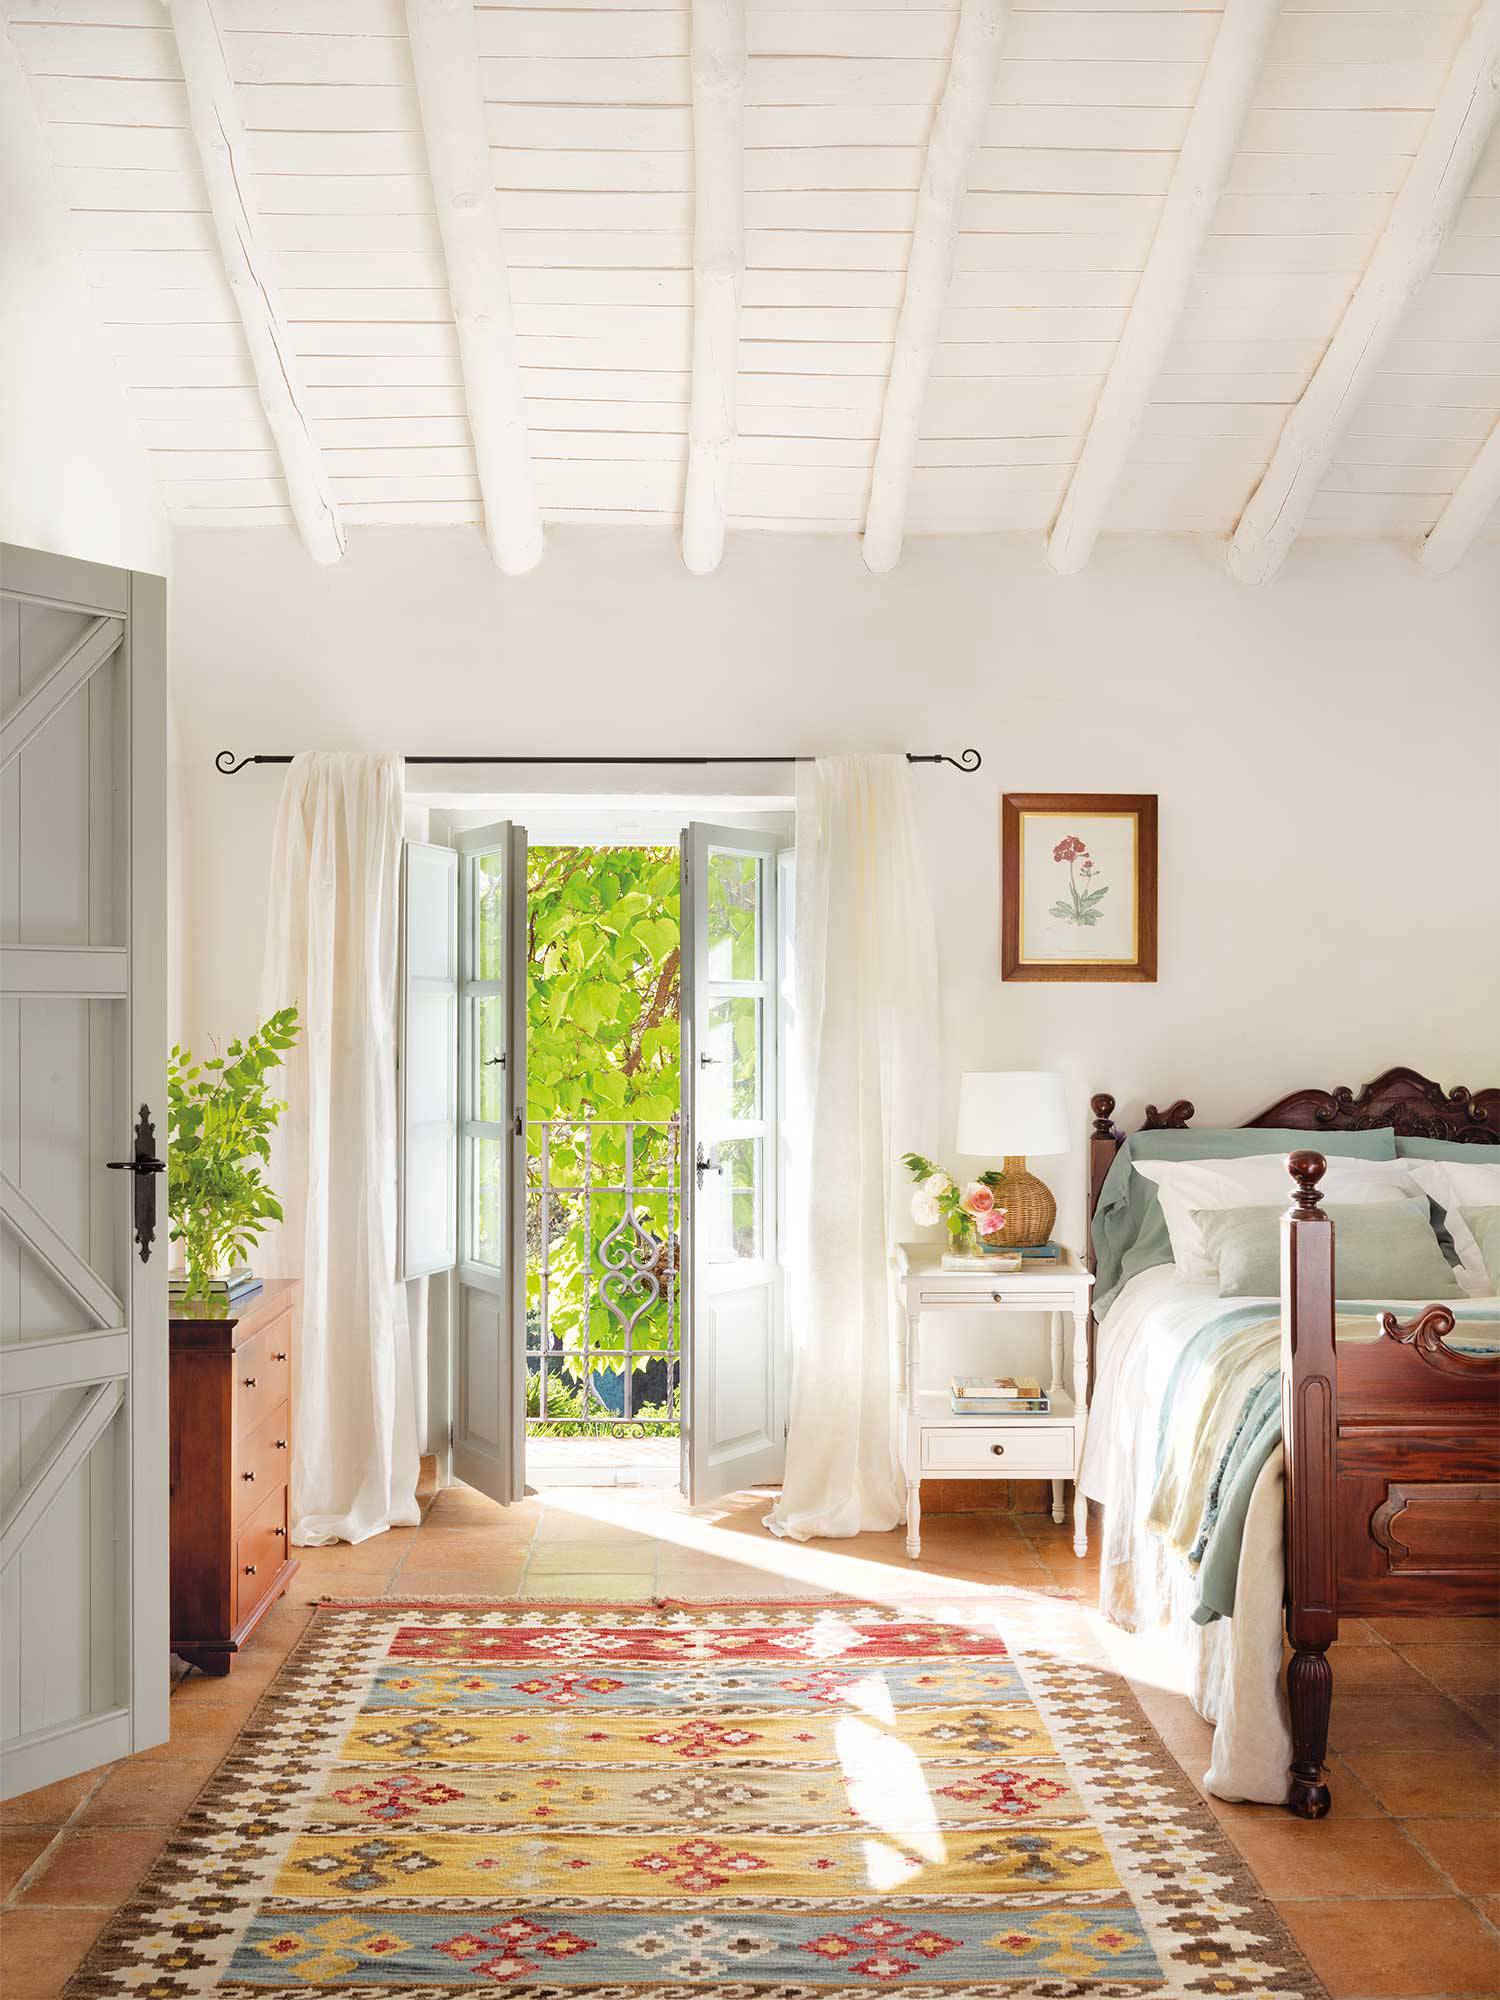 Dormitorio rústico con vigas de madera y alfombra de vivos colores.